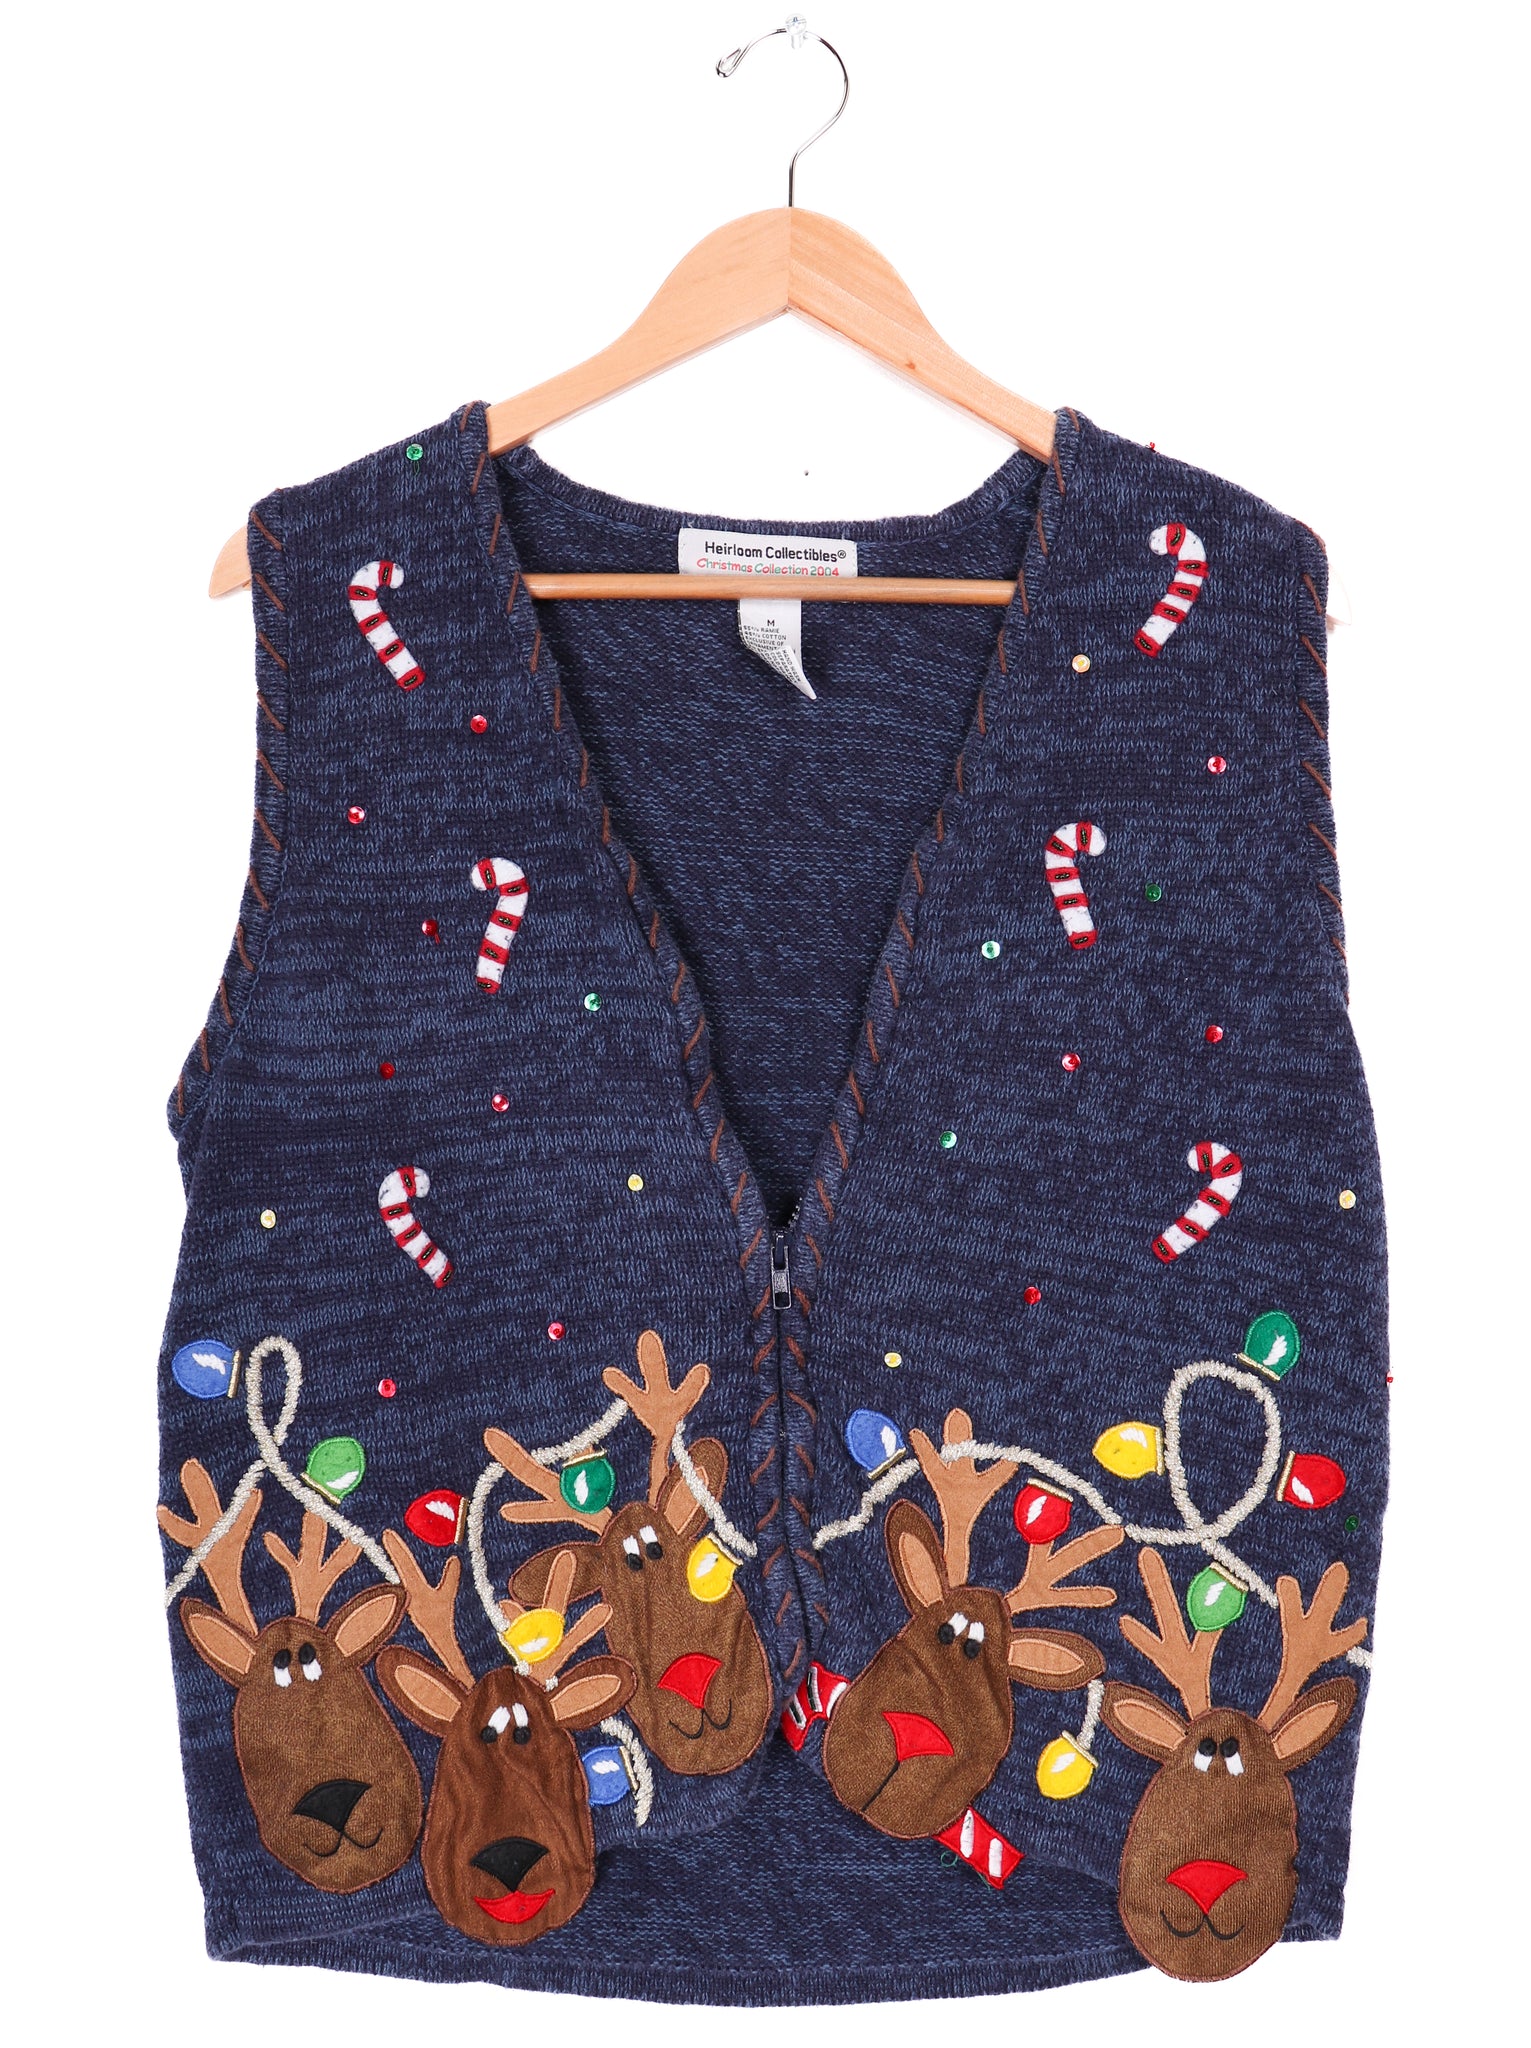 2004 Heirloom Collectibles Fun Reindeers Sweater Vest